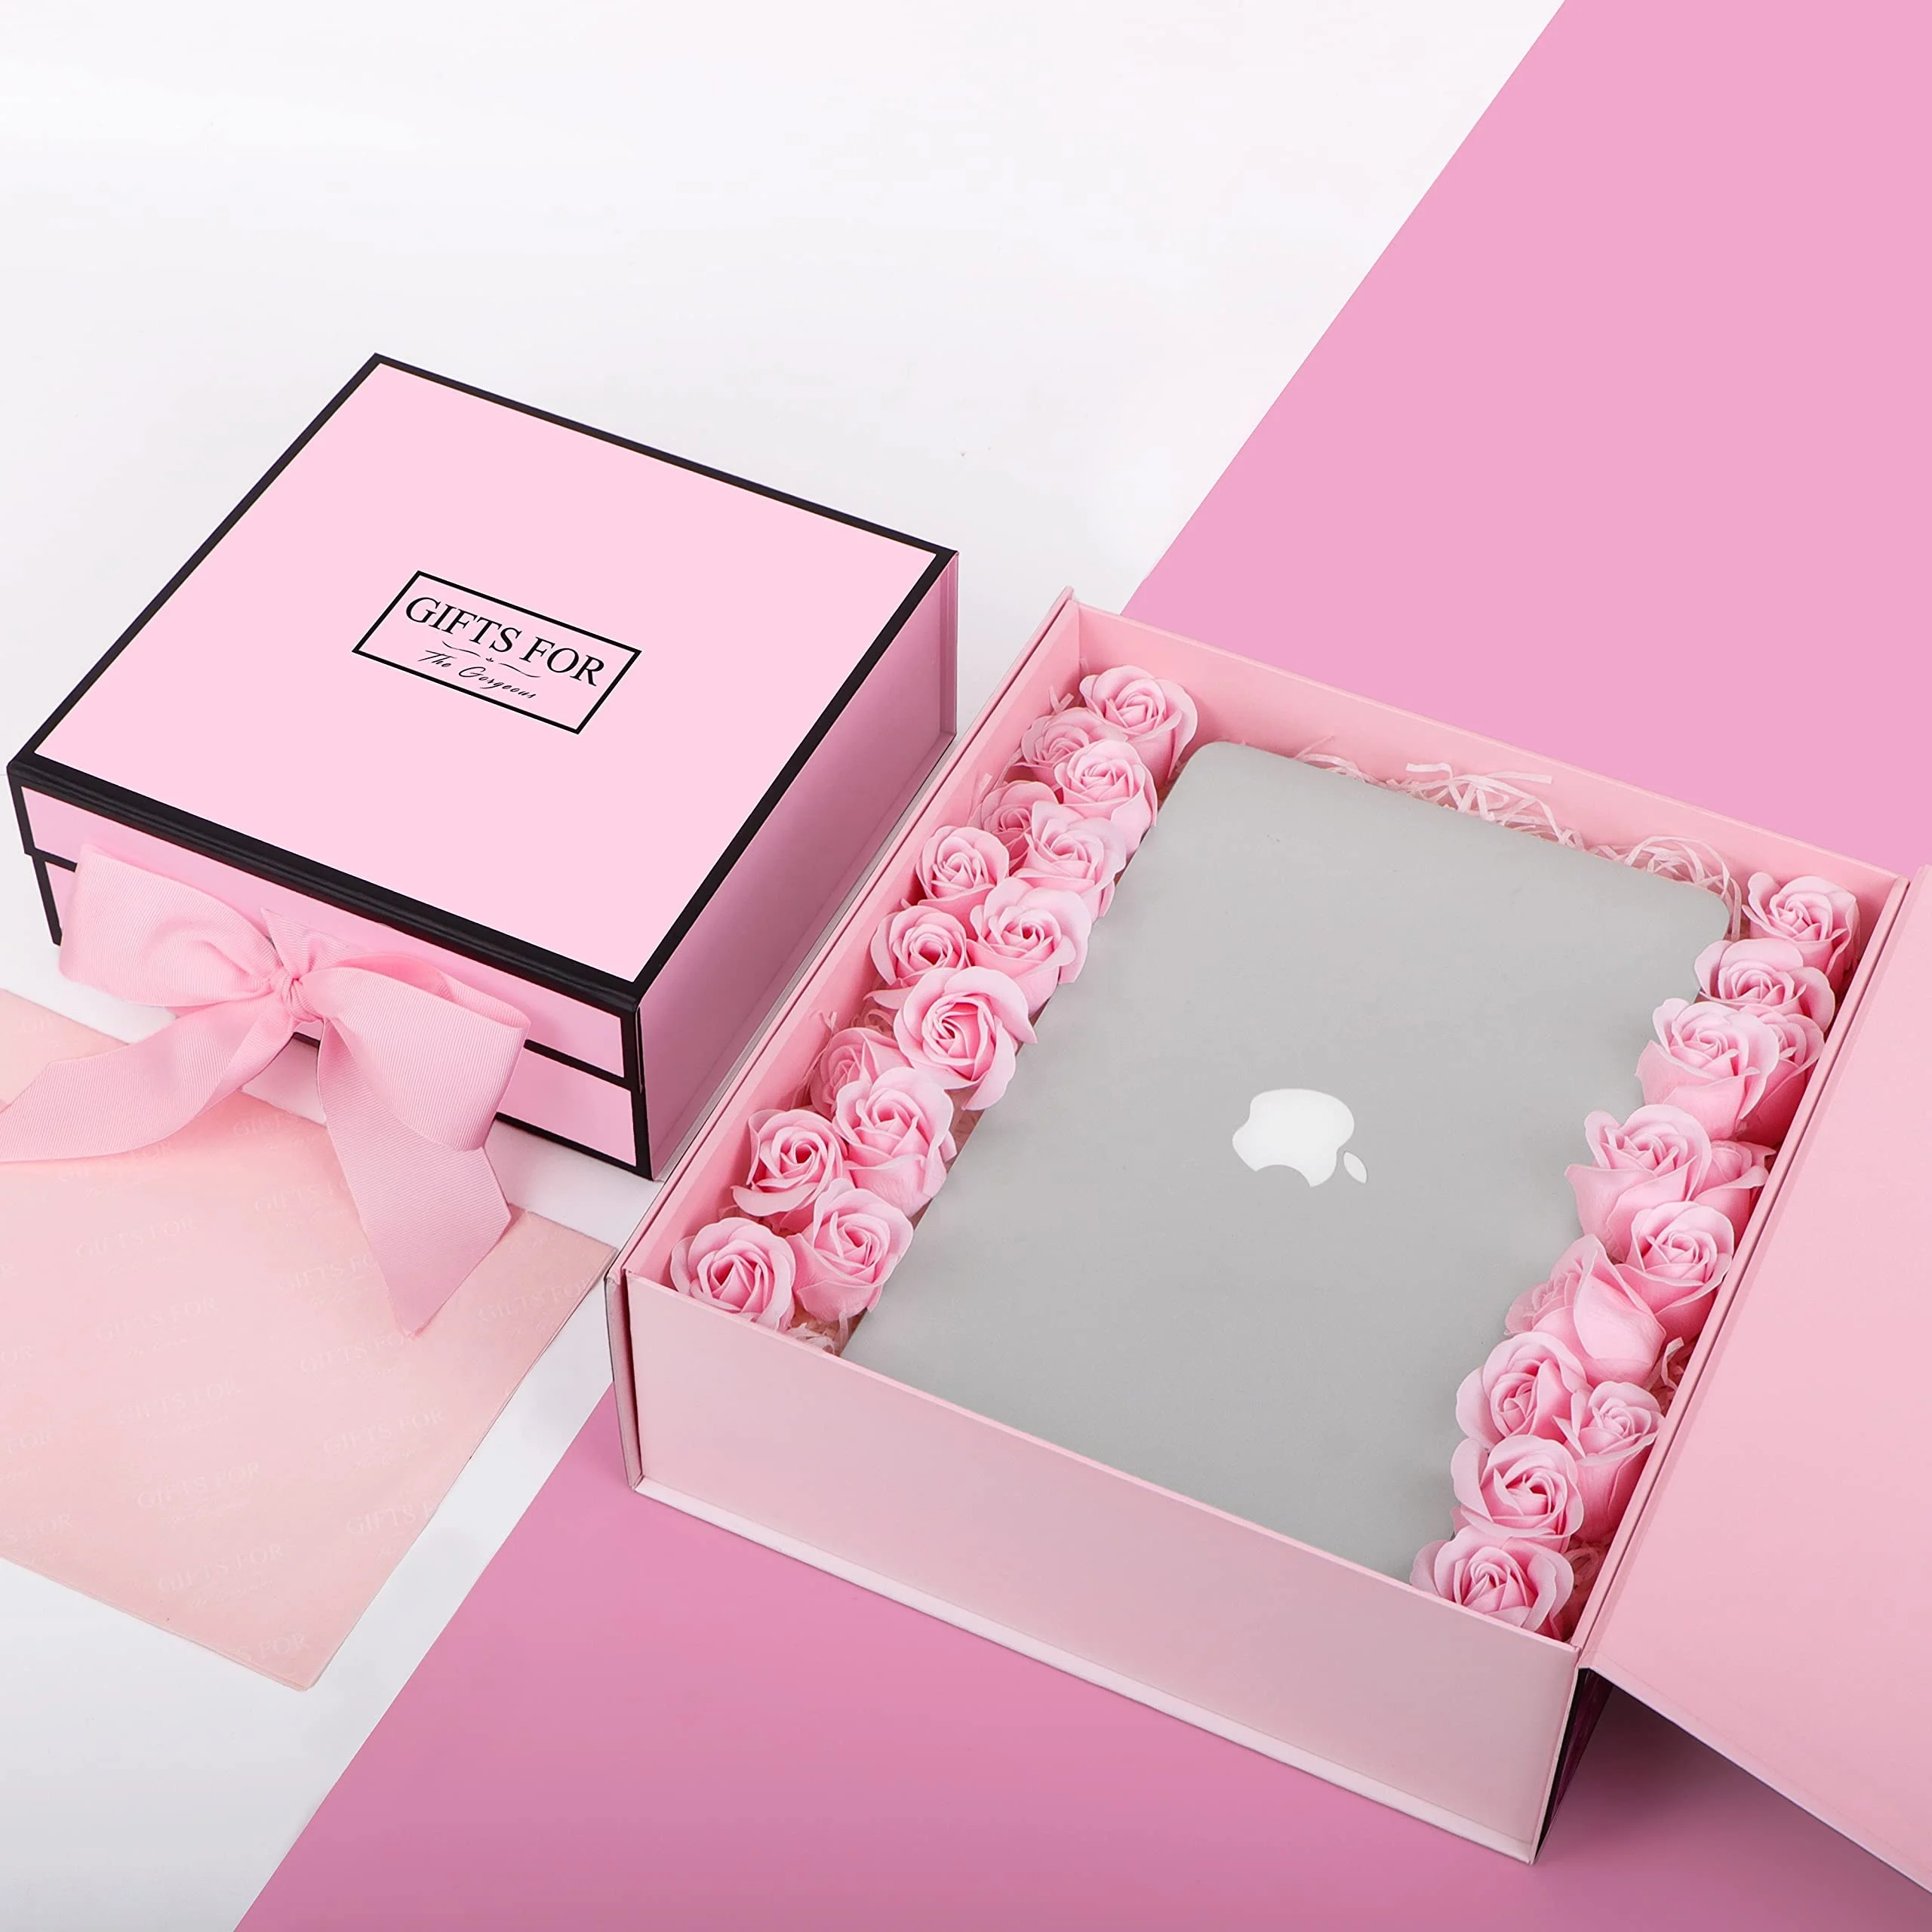 2 colors satin ribbon bridesmaids wedding gifts sets packaging for guests box